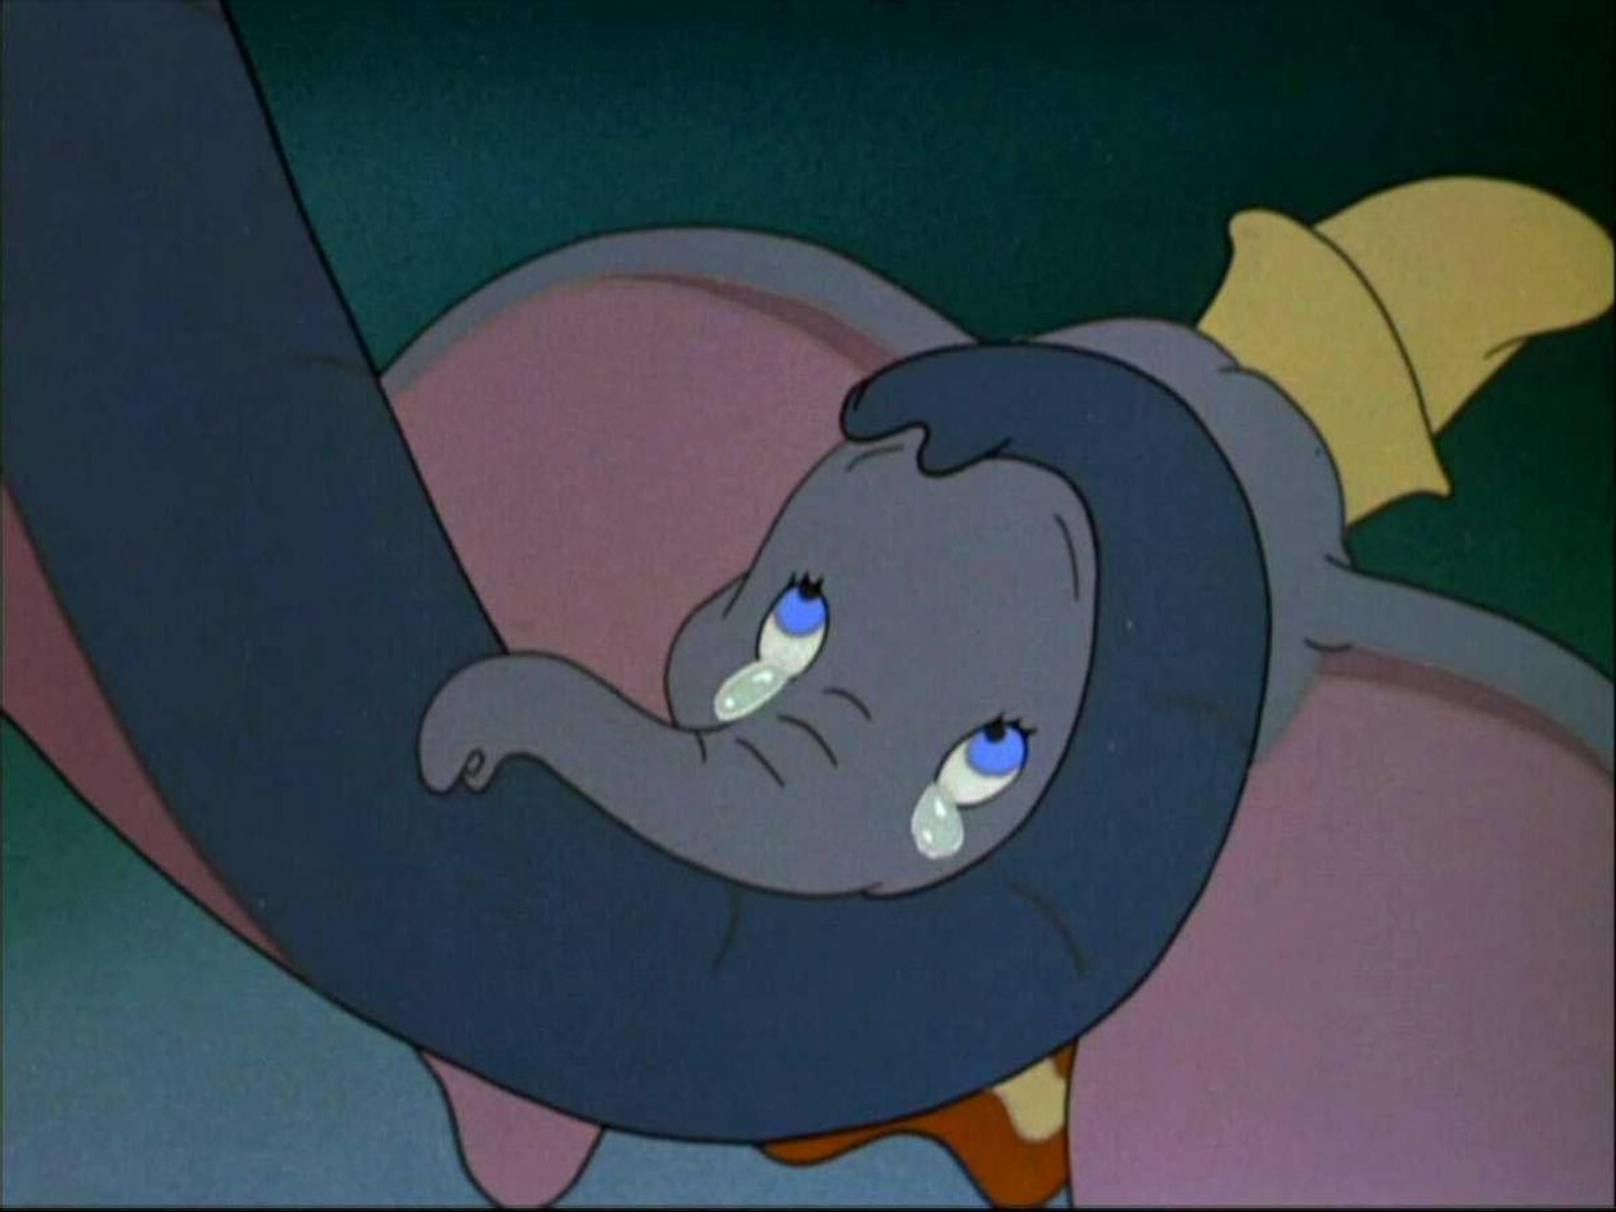 Der Text wird unter anderem bei "Dumbo" (1941) angezeigt. Der Klassiker steht schon lange wegen seiner Darstellung von stereotypisierten Schwarzen Figuren in der Kritik.